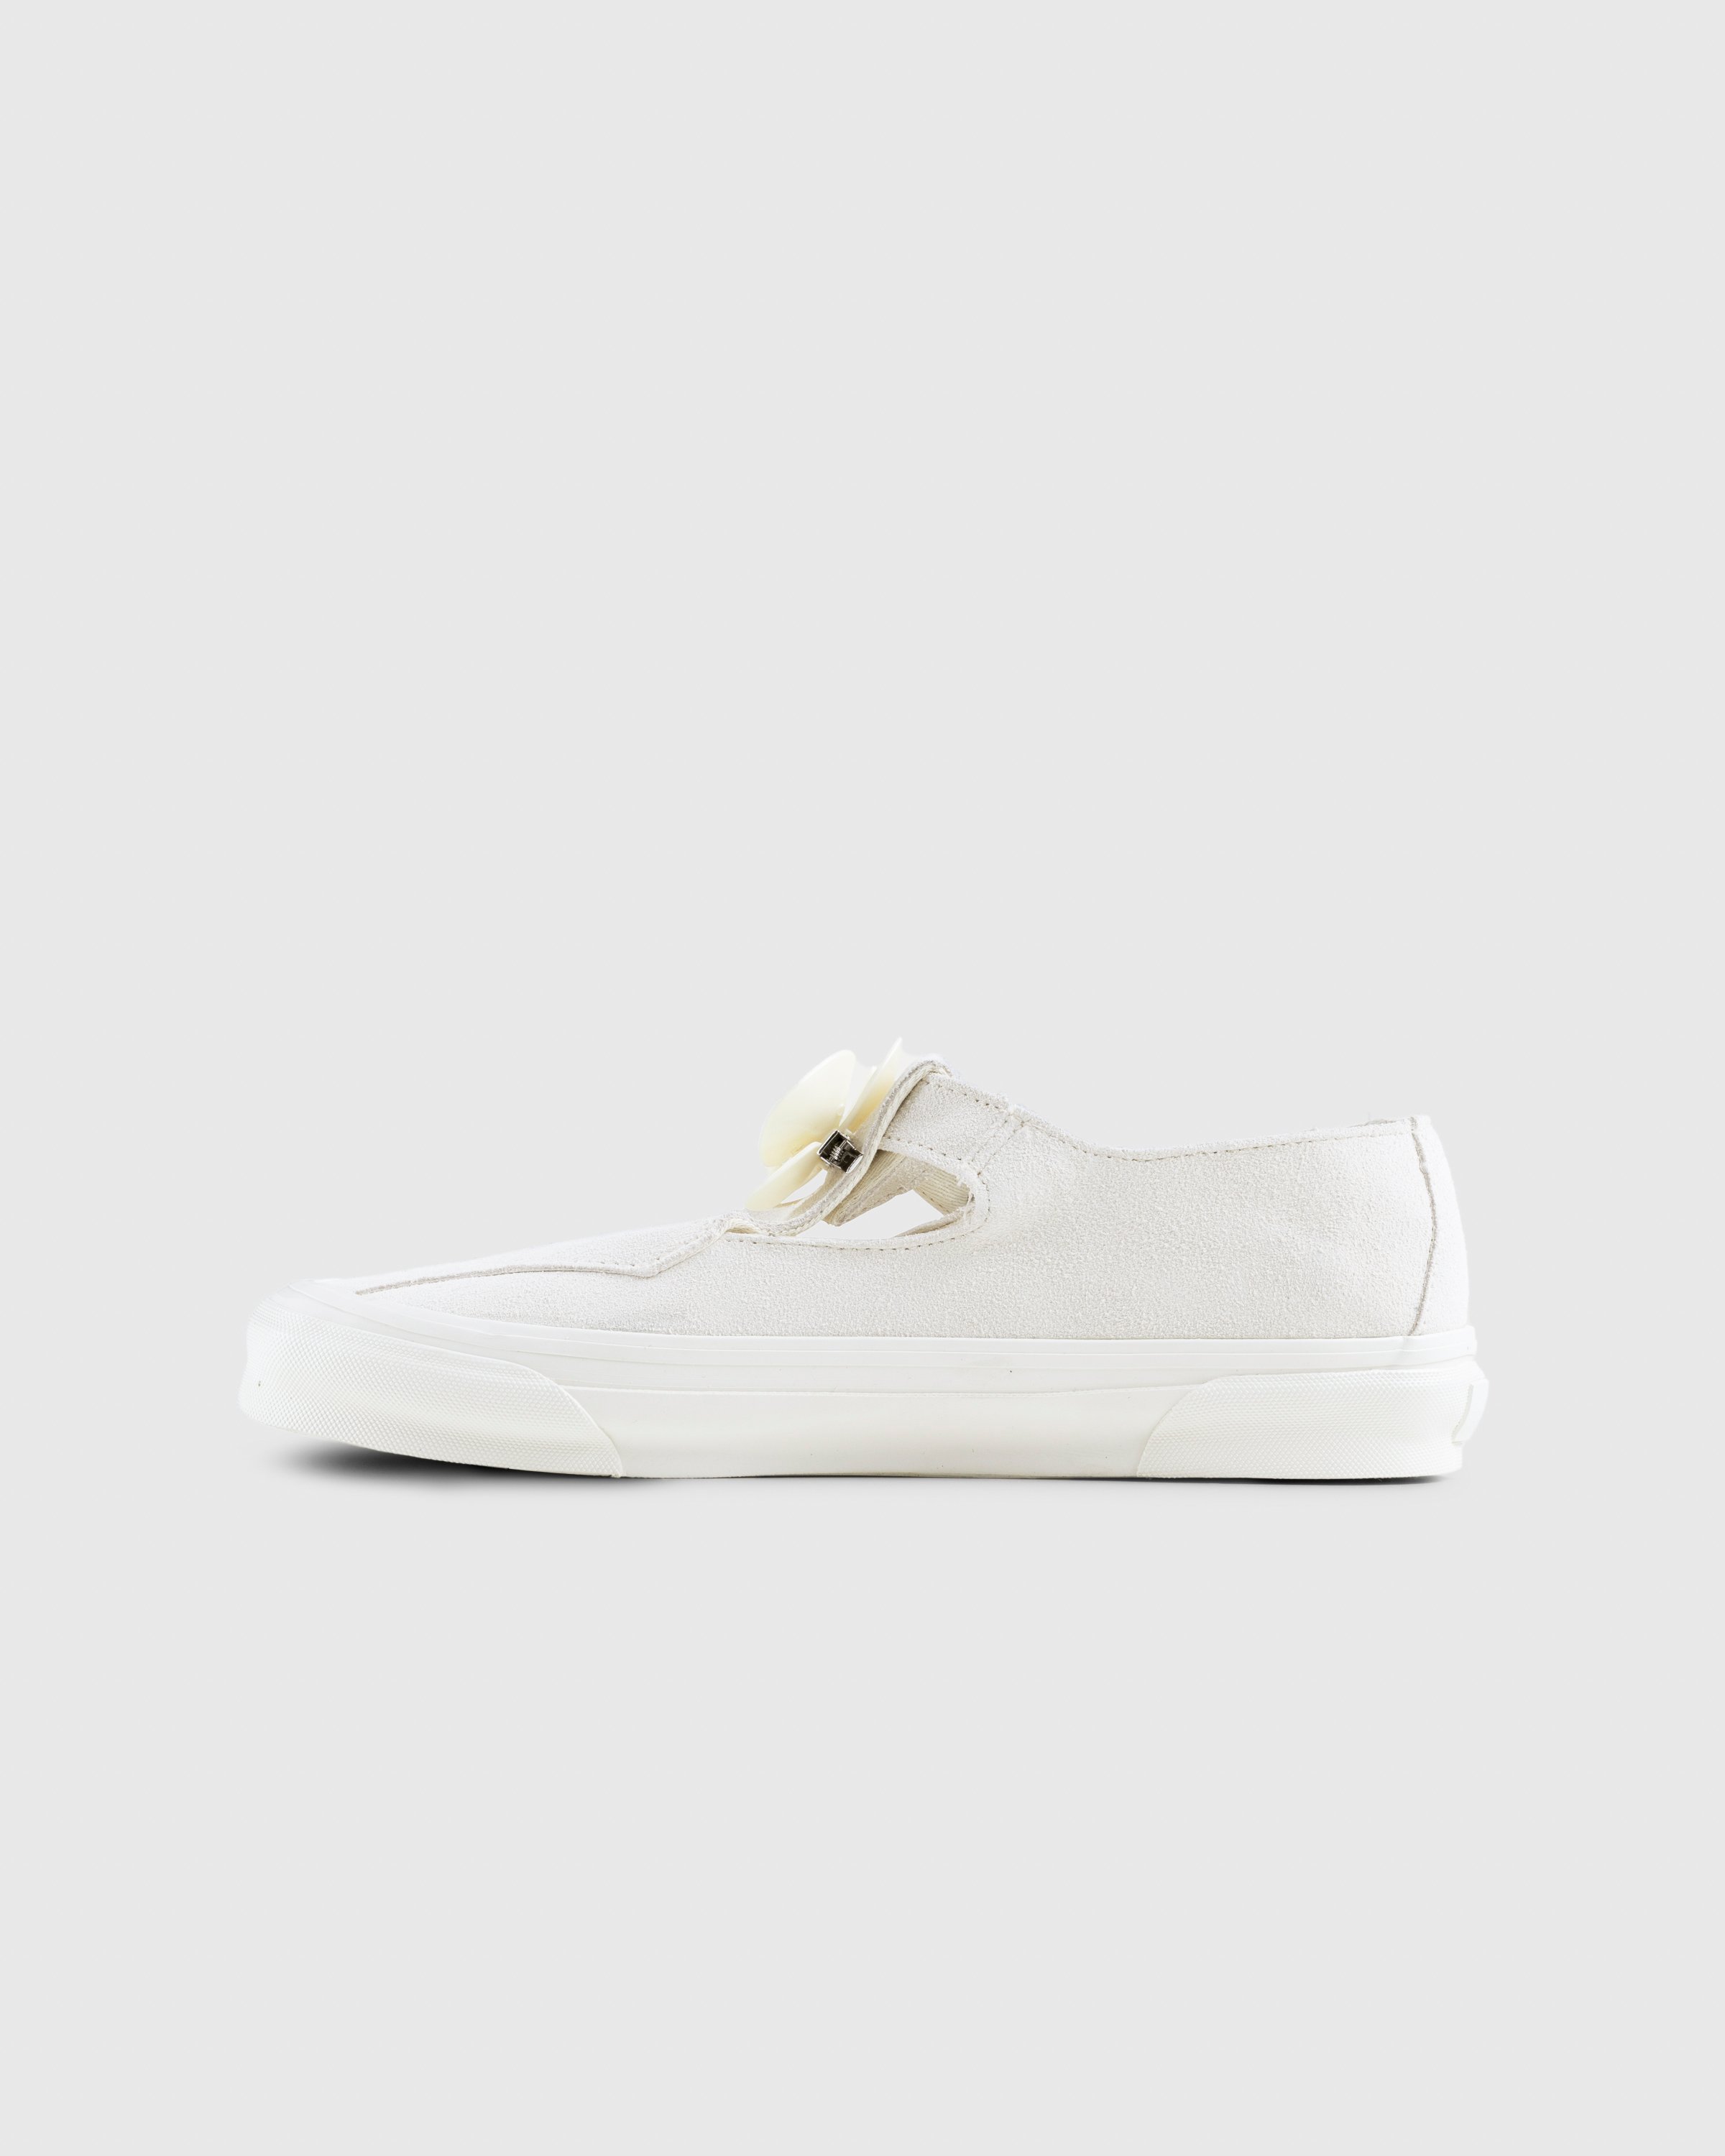 Vans - OG Style 93 LX Marshmallow - Footwear - White - Image 2